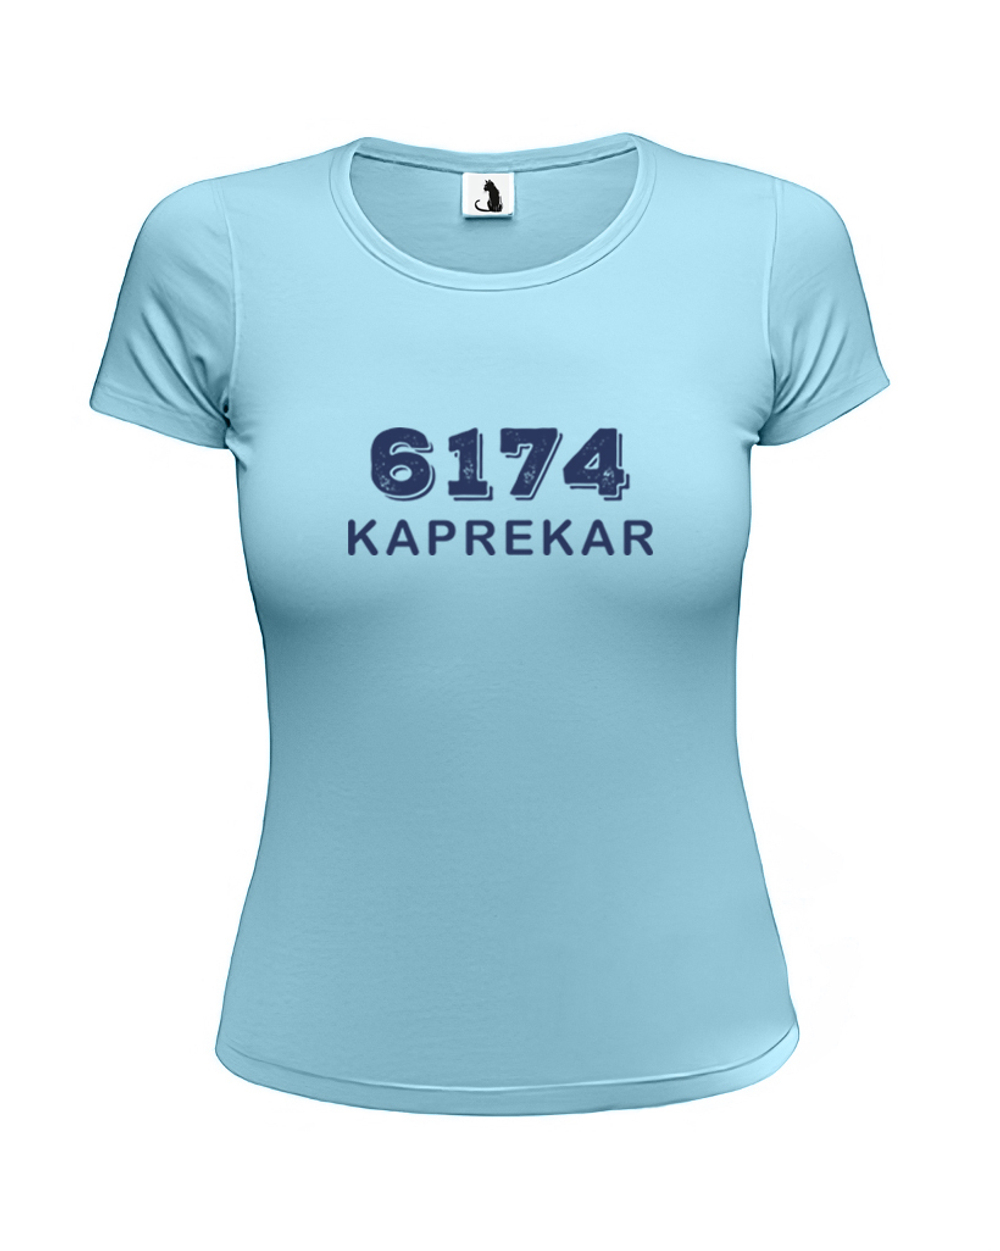 Футболка 6174 Kaprekar женская приталенная голубая